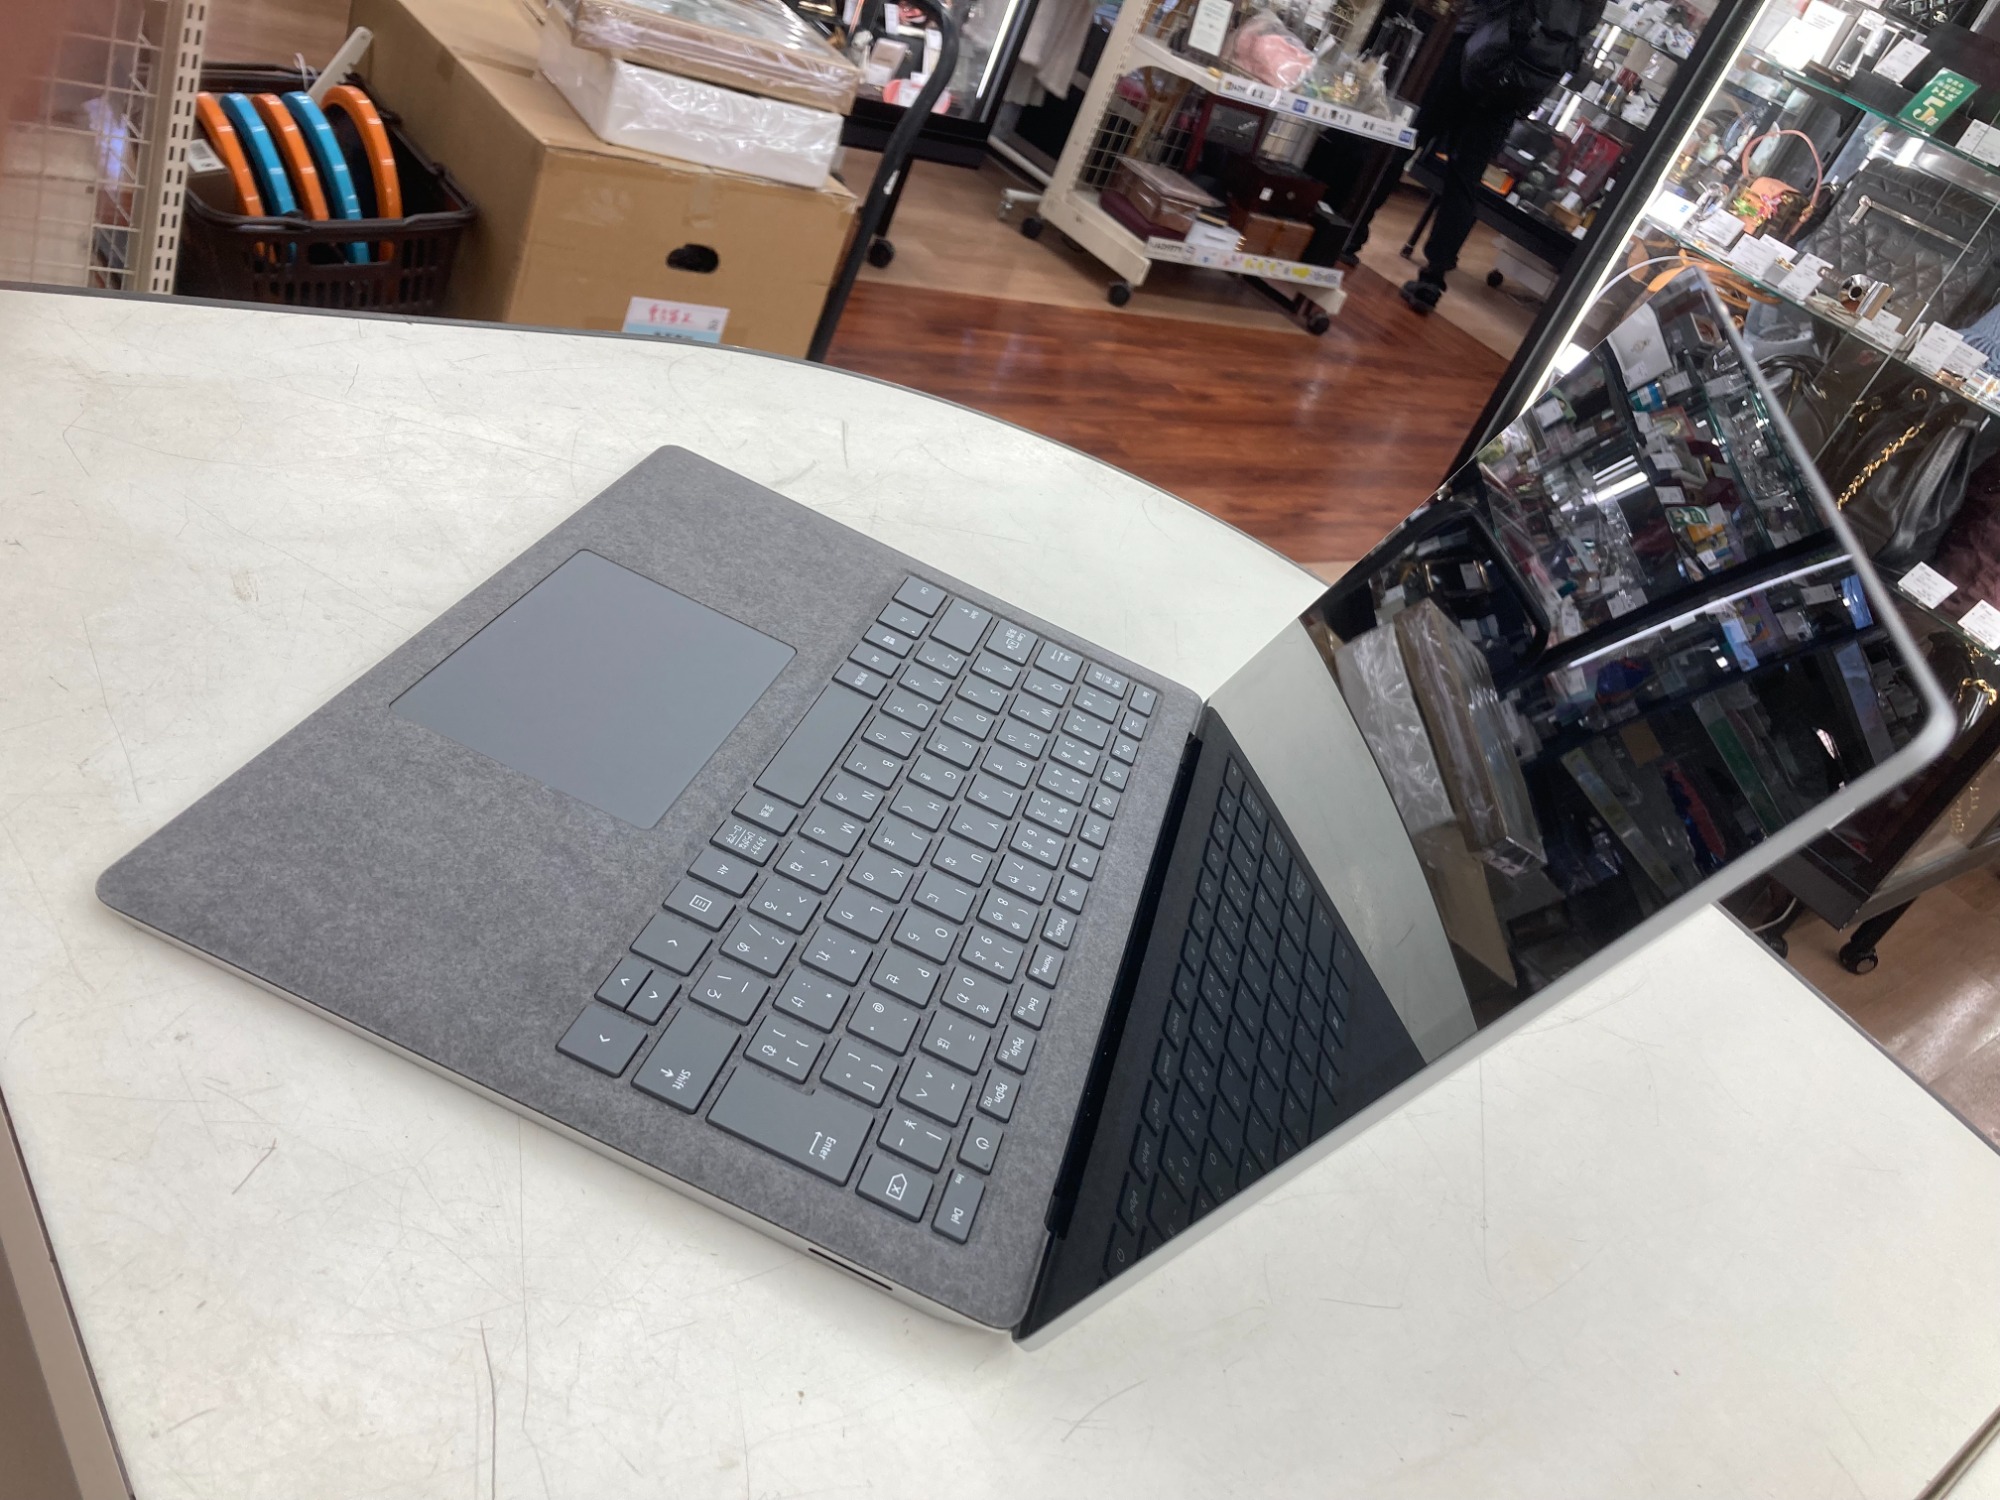 Microsoft】Surface Laptop 3 / VGY00018 / Officeﾗｲｾﾝｽｶｰﾄﾞ未使用付